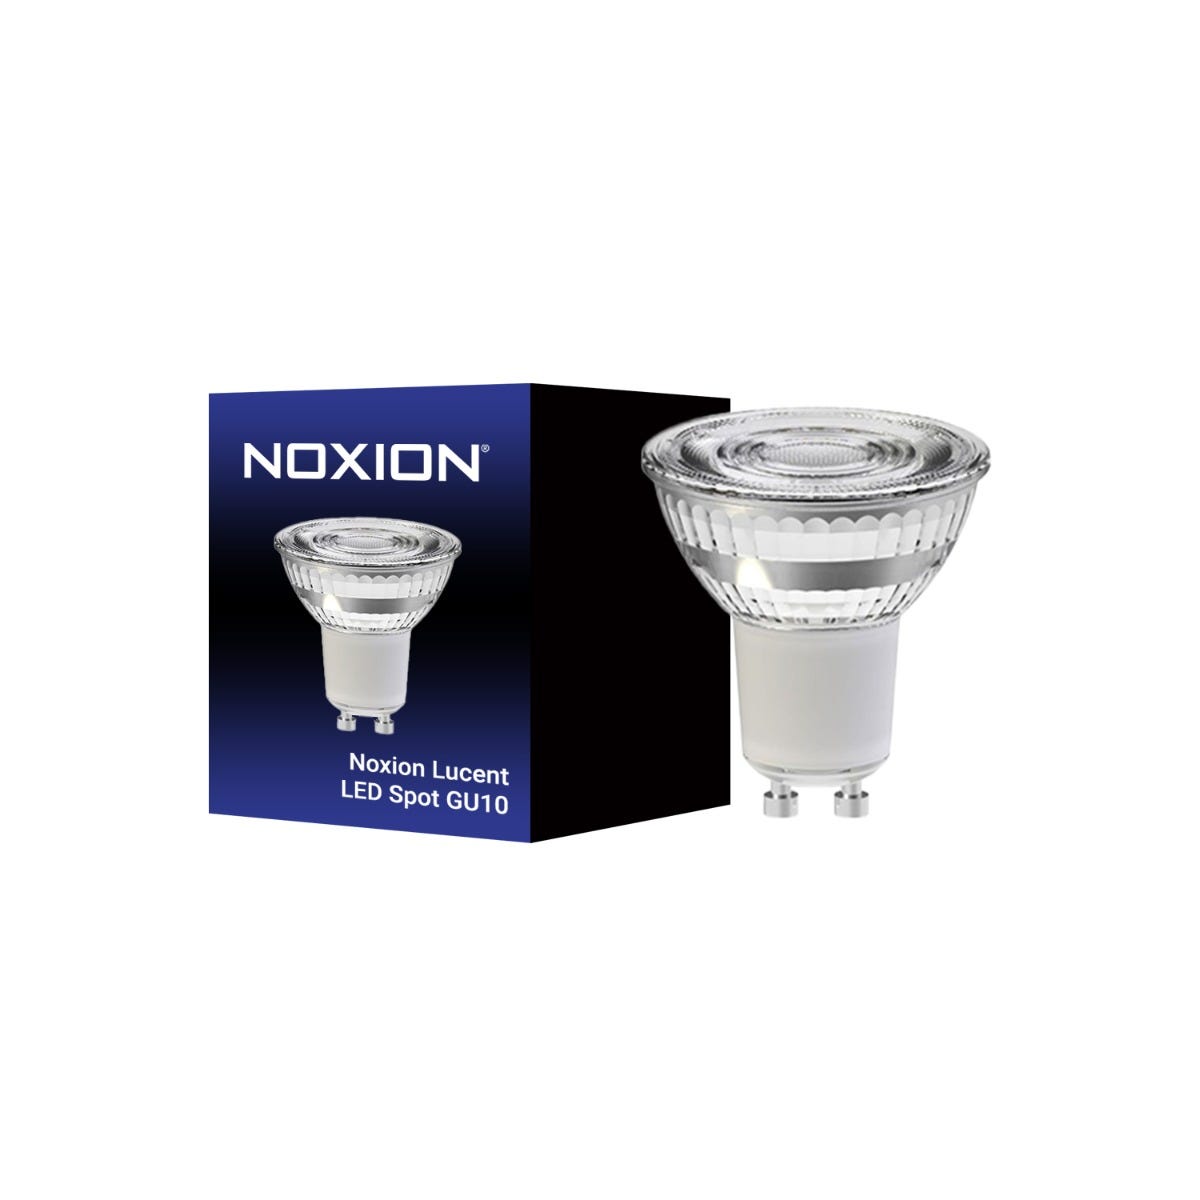 Noxion Lucent Spot LED GU10 PAR16 4.8W 450lm 36D - 840 Blanc Froid, Équivalent 65W